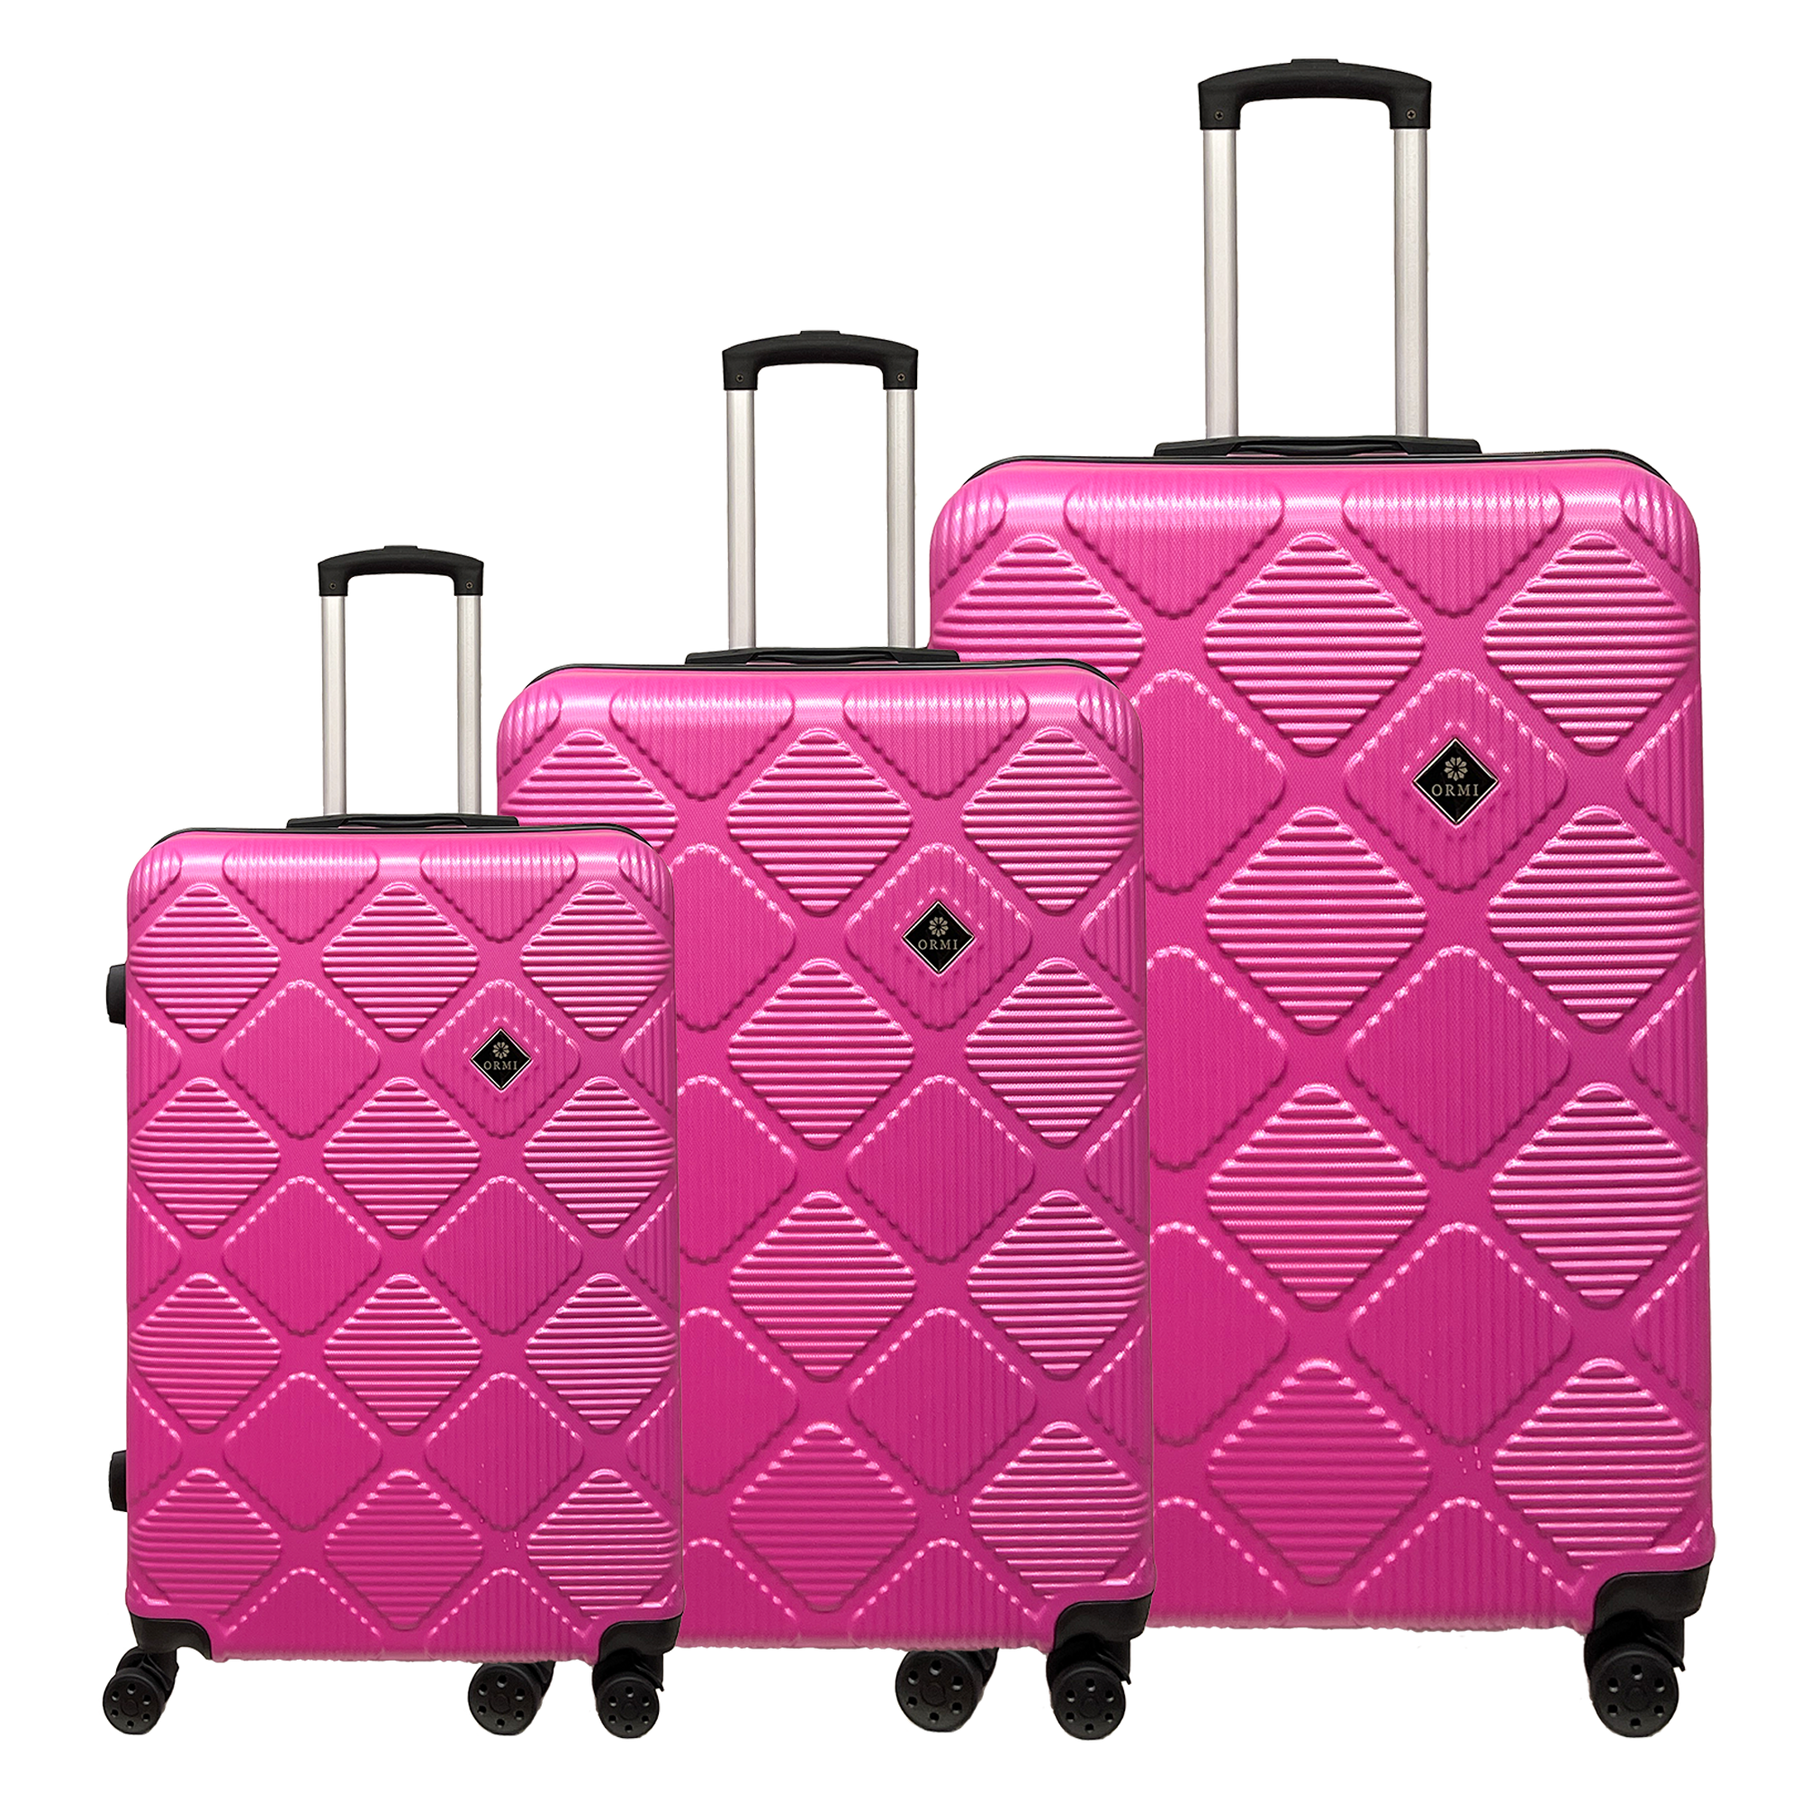 Set de 3 bagaje cu role trolley Ormi WavyLine din ABS rigid, ultraușoare - mică, medie și mare